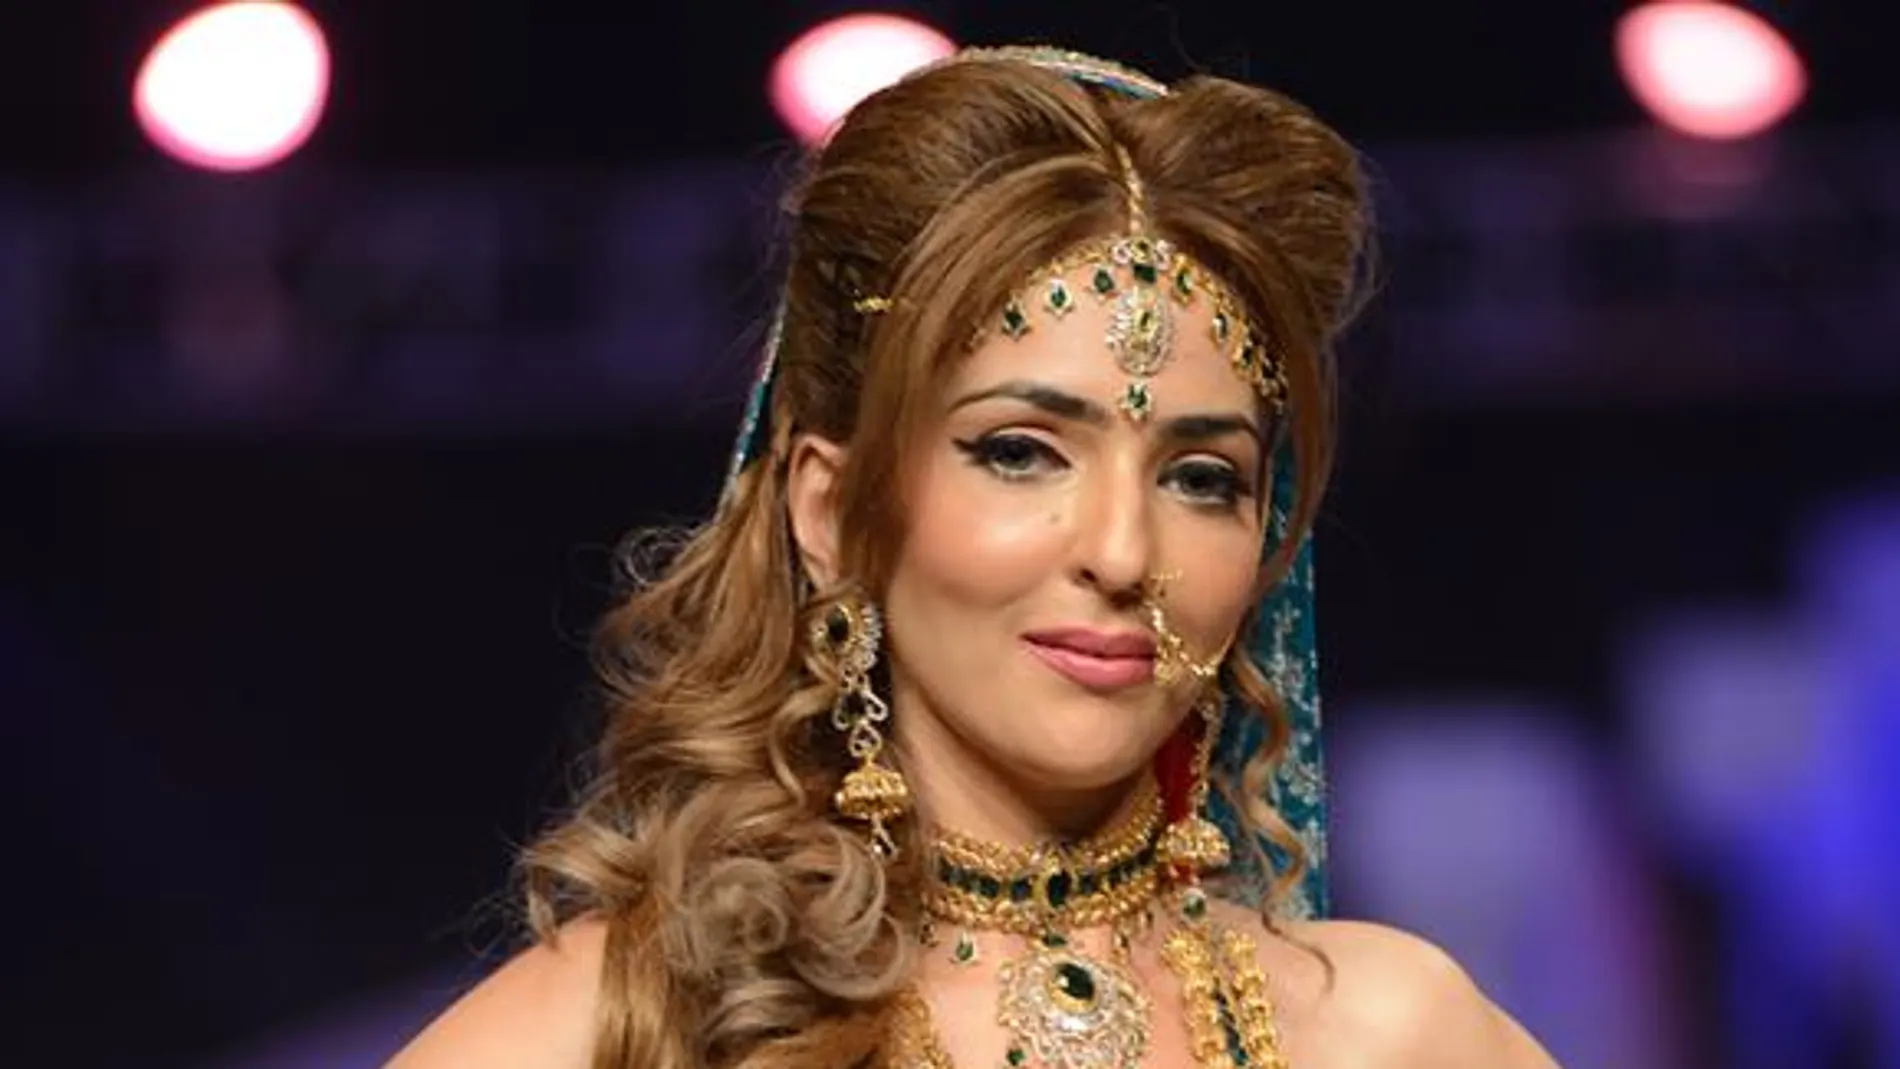 Asesinada en Pakistán Miss Asia 2012